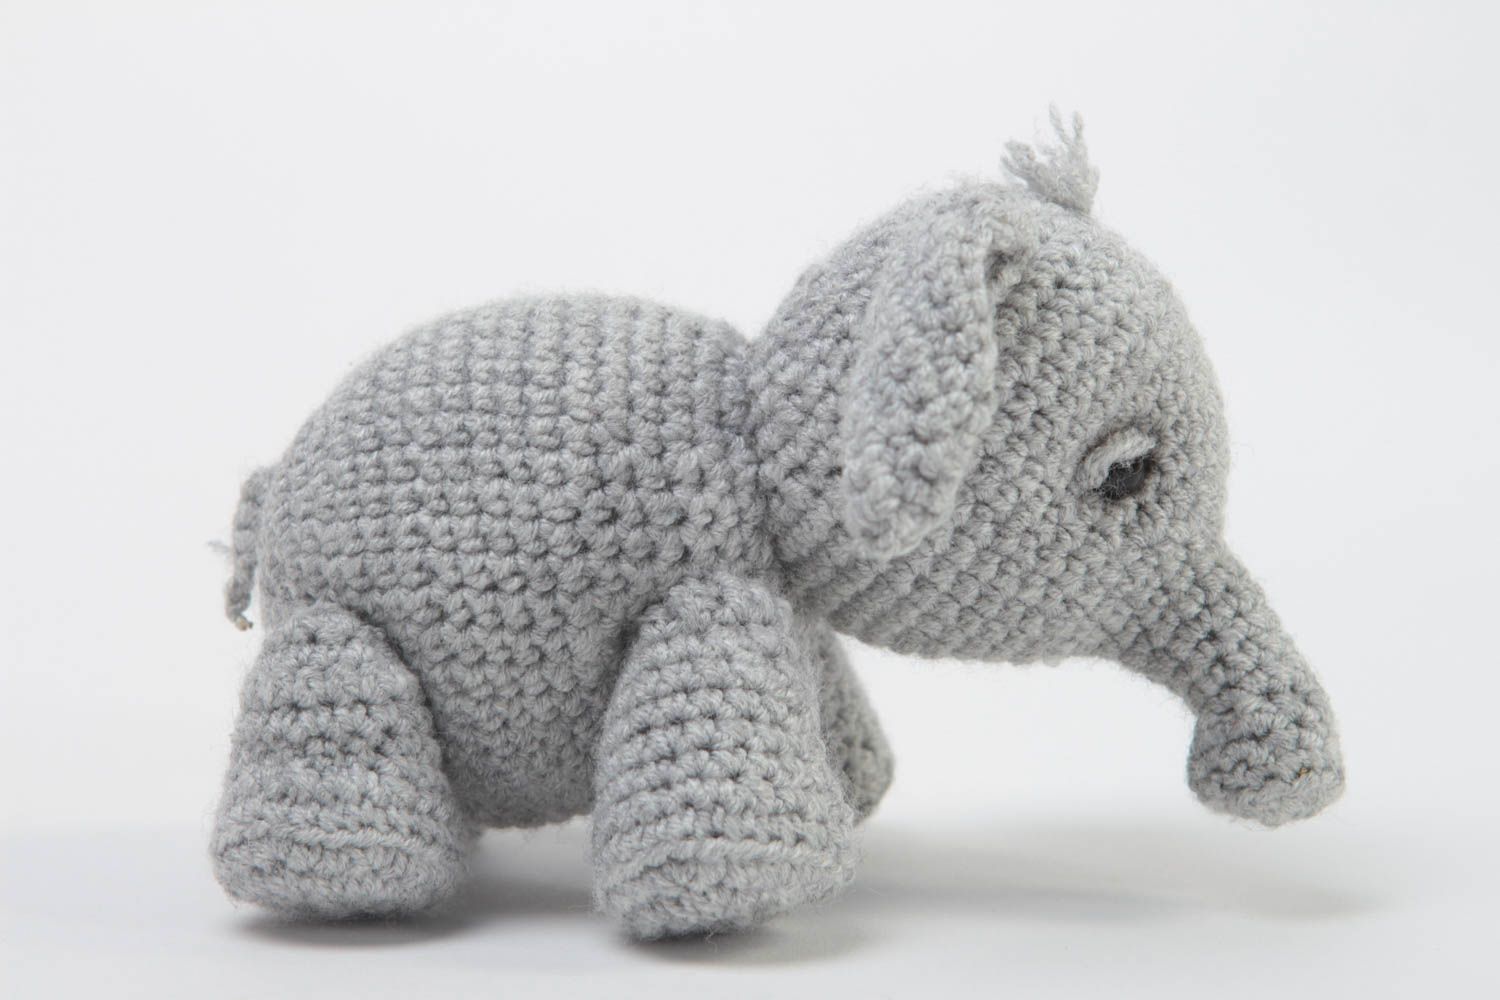 Handmade Elefant Plüschtier weiches Kuscheltier Plüschtier Elefant grau schön foto 2